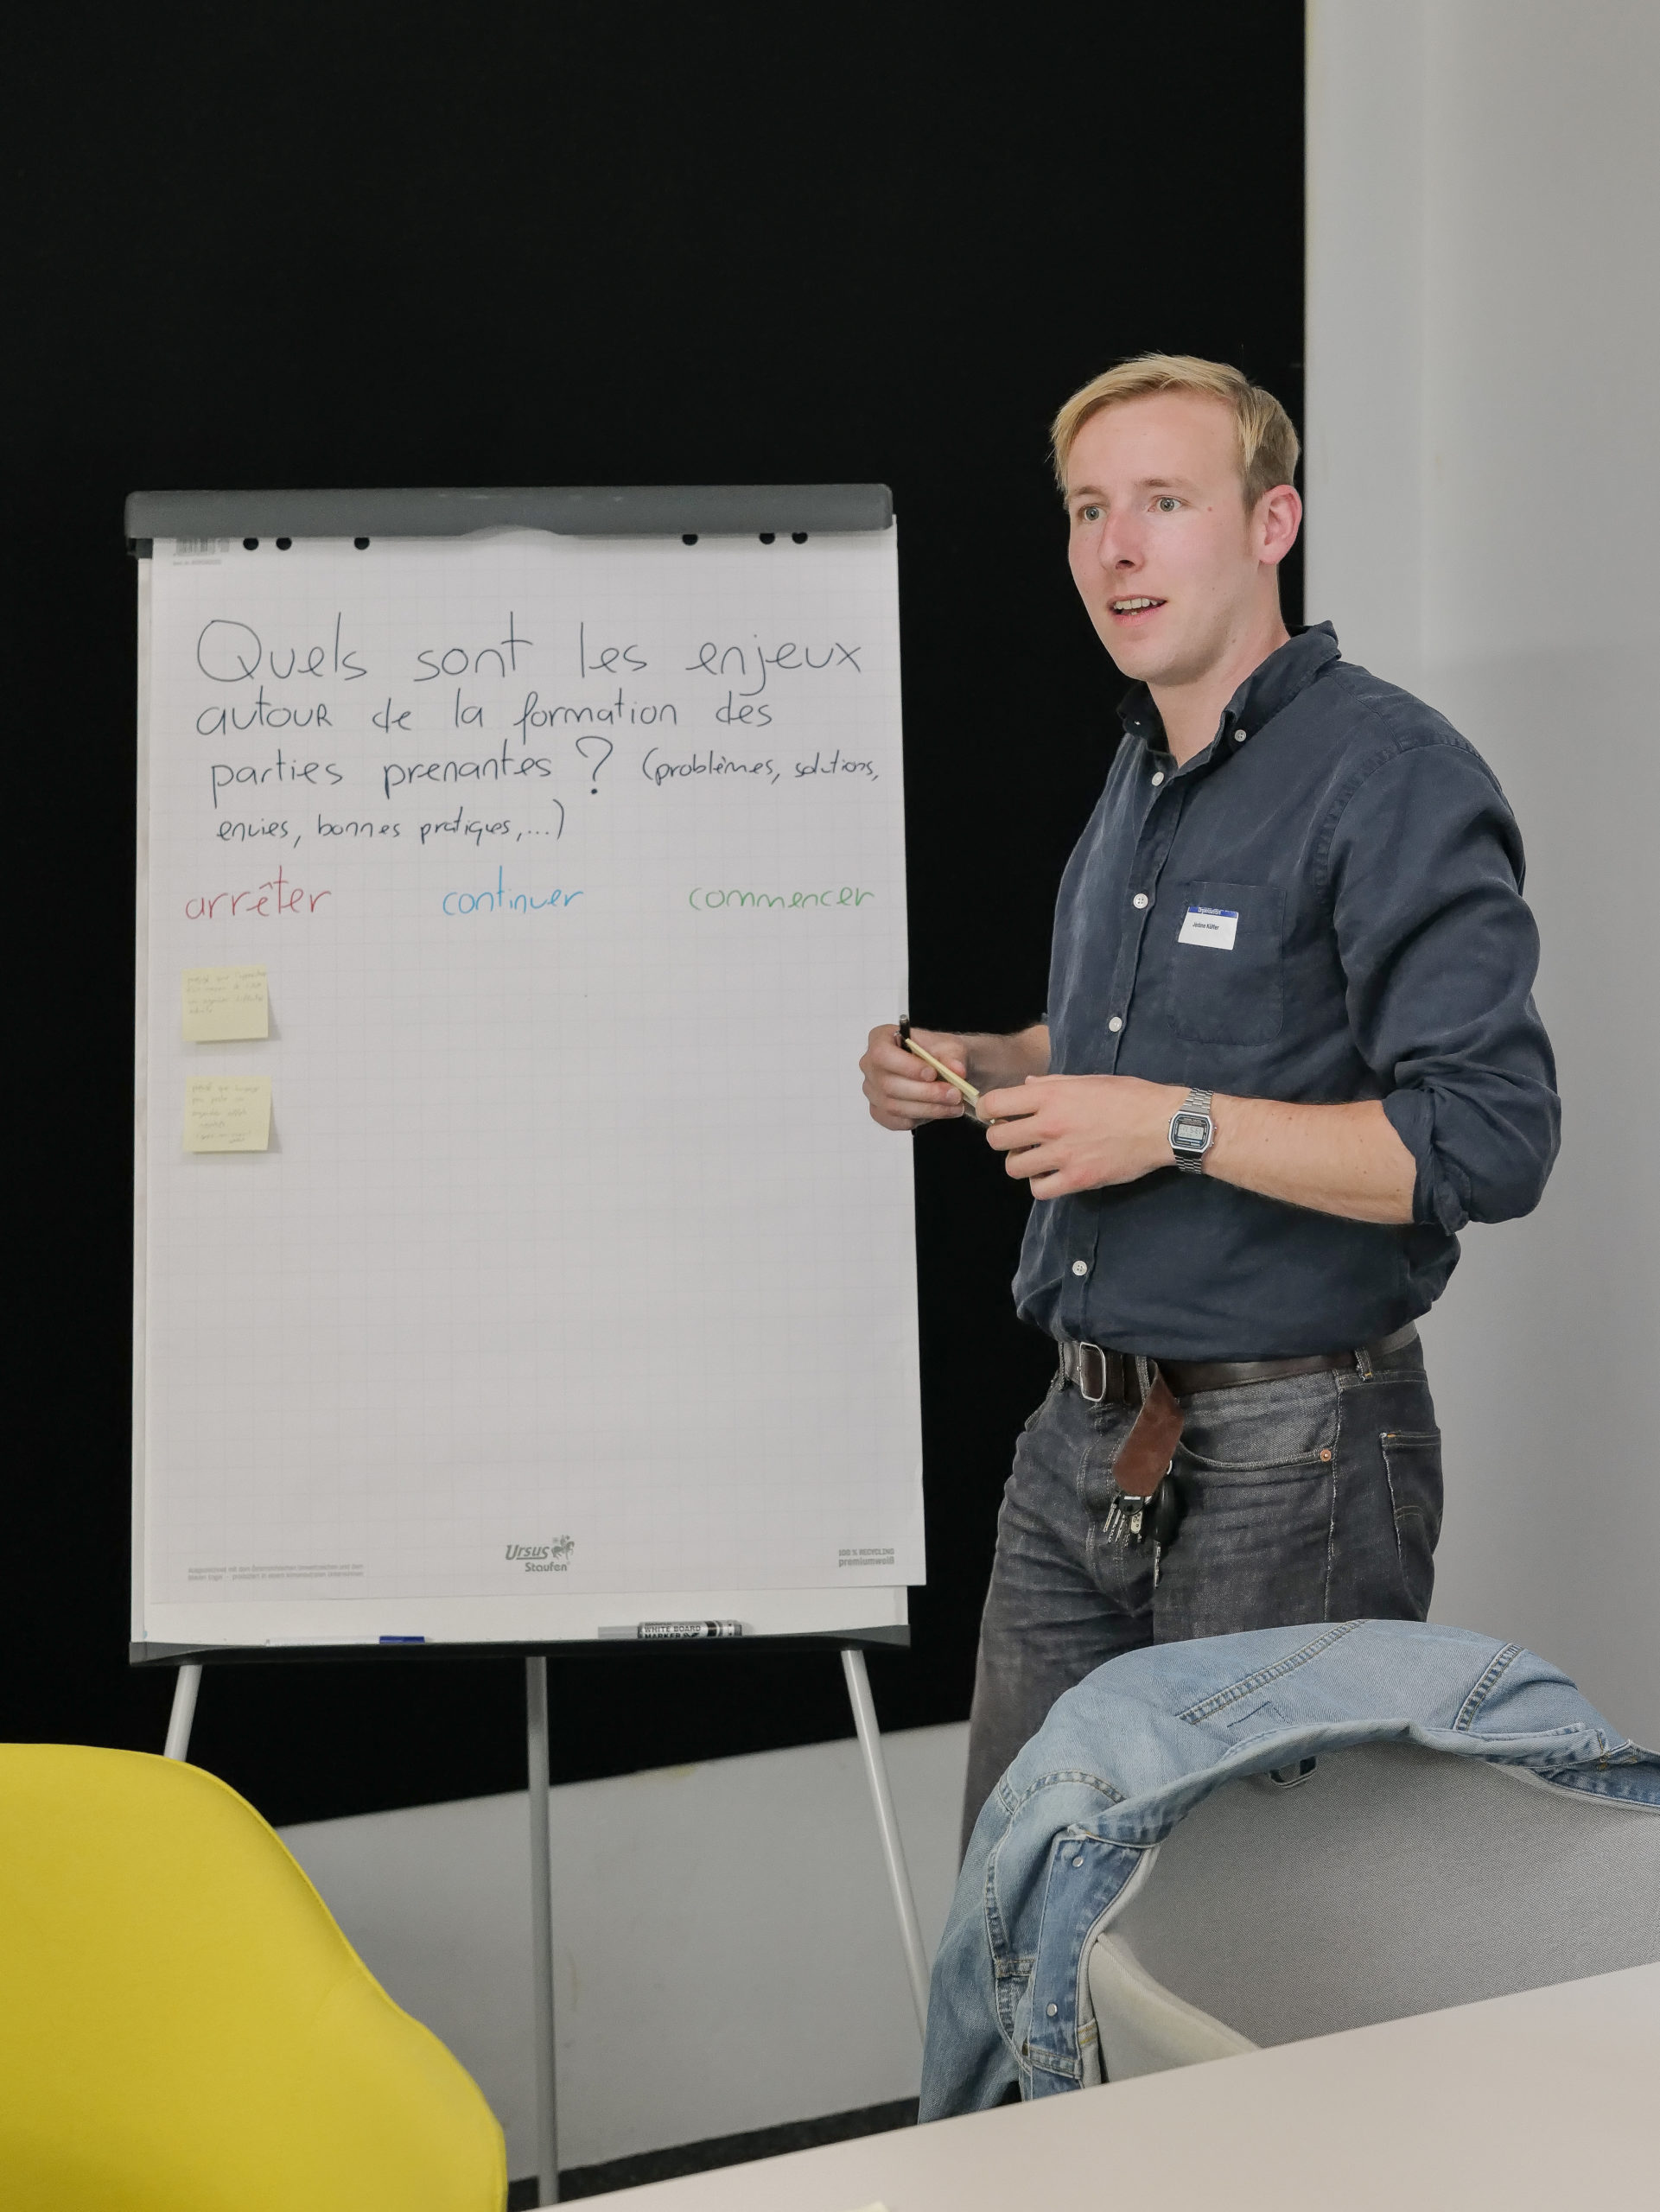 Jérôme, Mitglied des Innovationsteams Booster Technologie und Behinderung, stellt seine Gruppe im Ideationsworkshop vor.